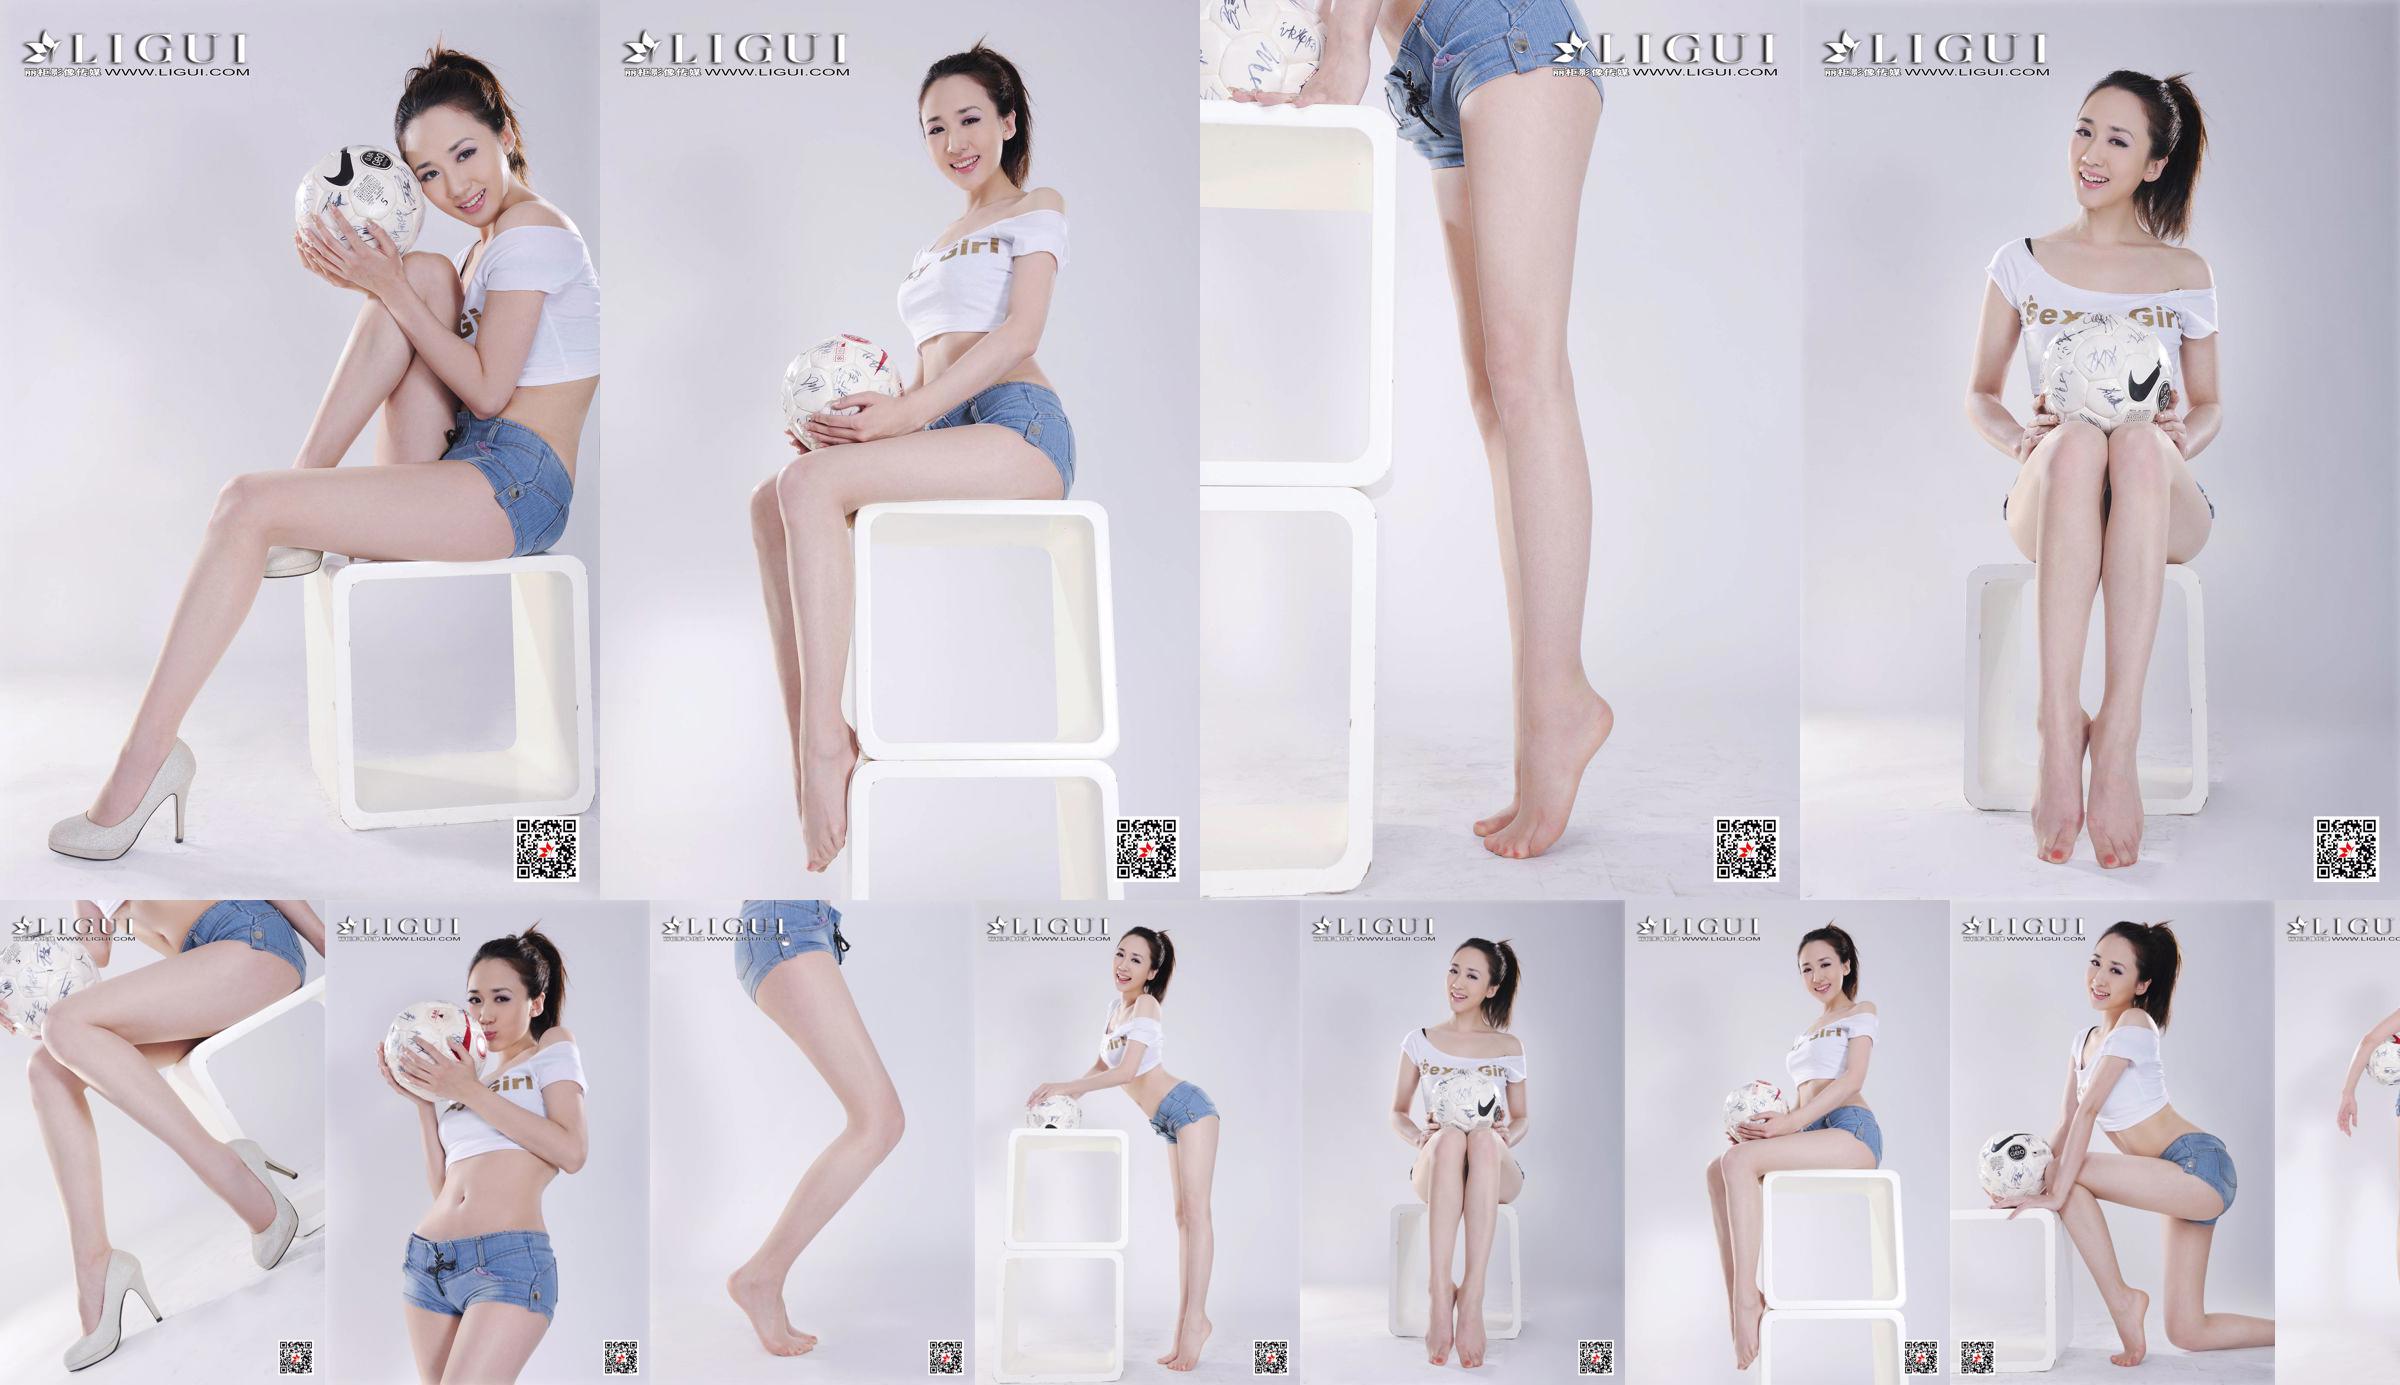 Model Qiu Chen "Super Short Hot Pants Football Girl" [LIGUI] No.23c2ac Page 1